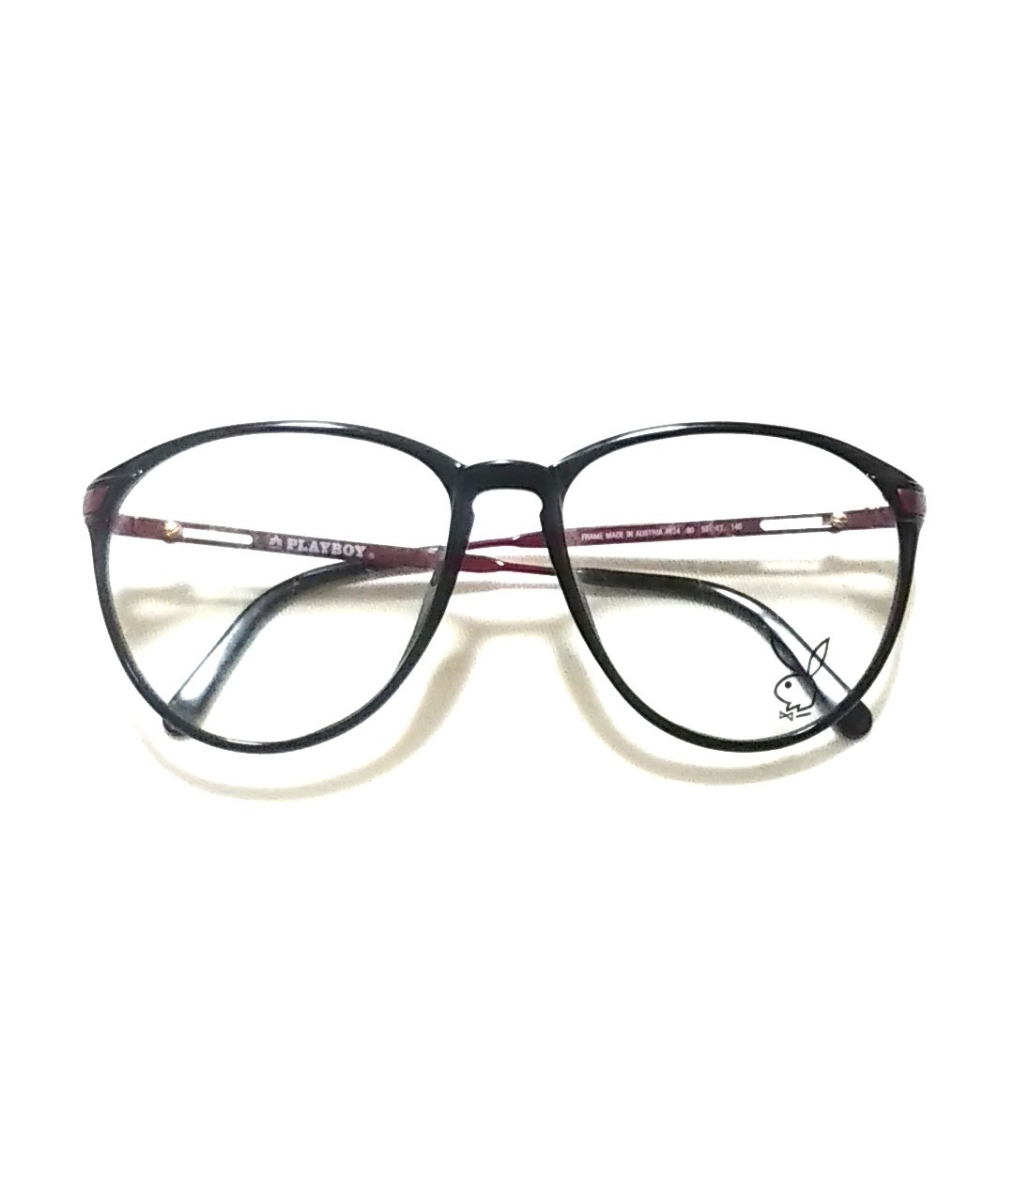 Vintage 70s PLAYBOY プレイボーイ AUSTRIA製 ビンテージ メガネ 眼鏡 サングラス フレーム ブラック×レッド デモレンズ オーストリア製_画像1